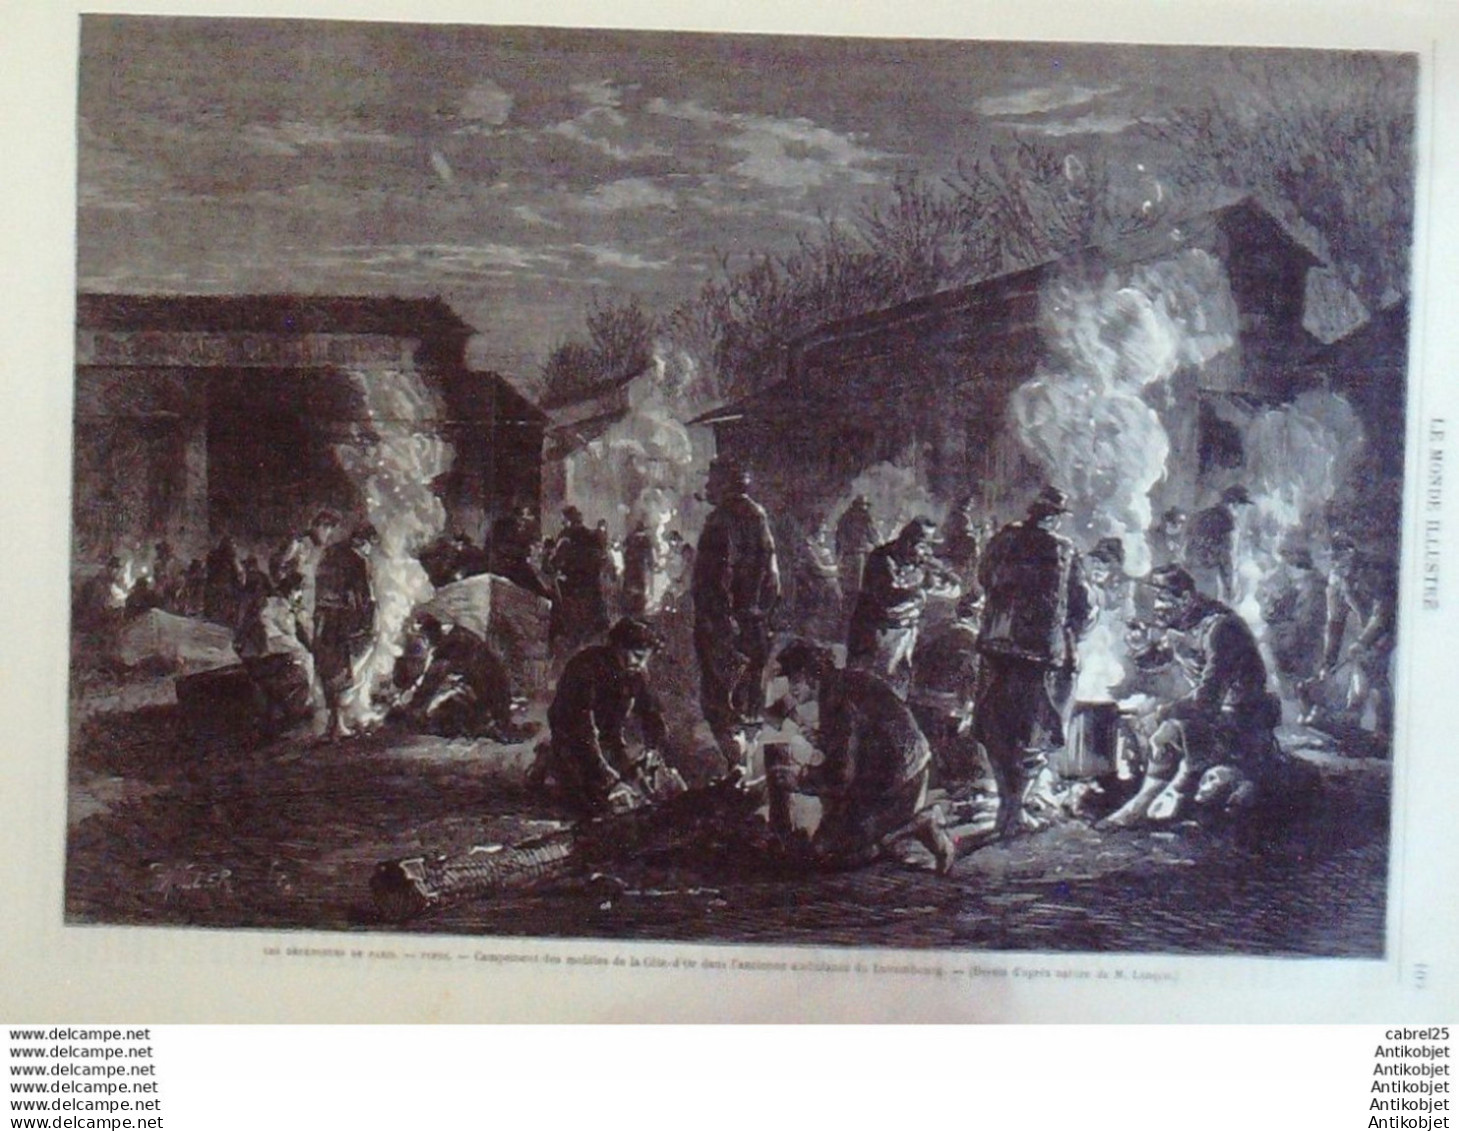 Le Monde Illustré 1871 N°723 Bordeaux (33) Campements Spahis Mobiles (21) Transbordement Londres A Paris - 1850 - 1899